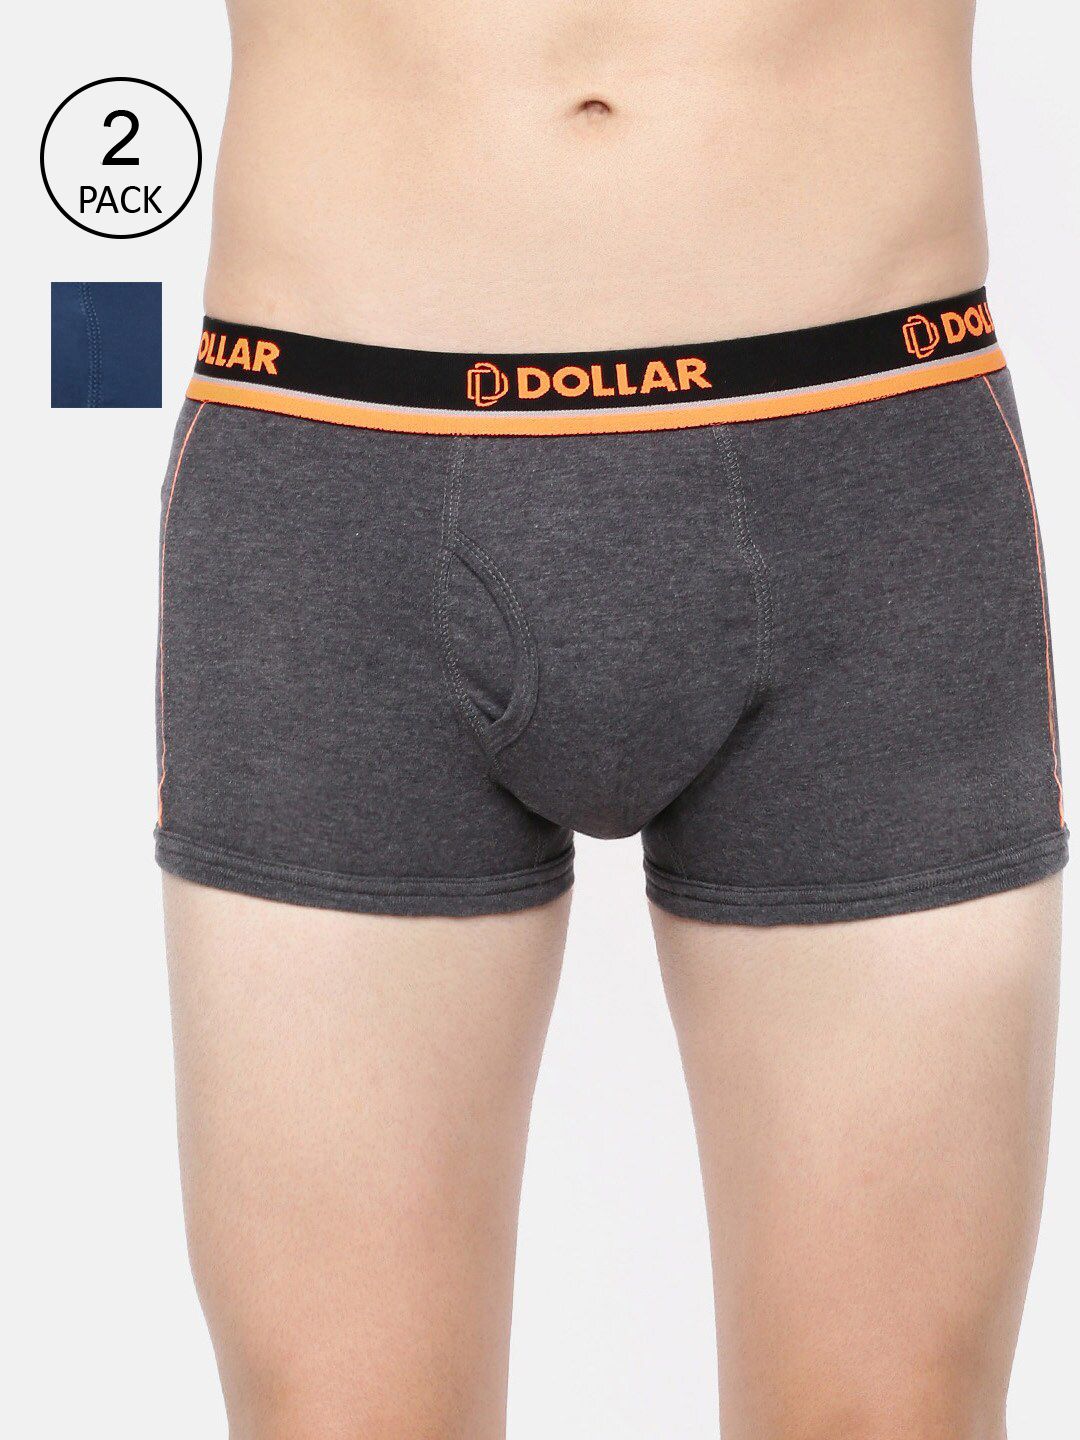 Shorts, Dollar Underwear Pack 2